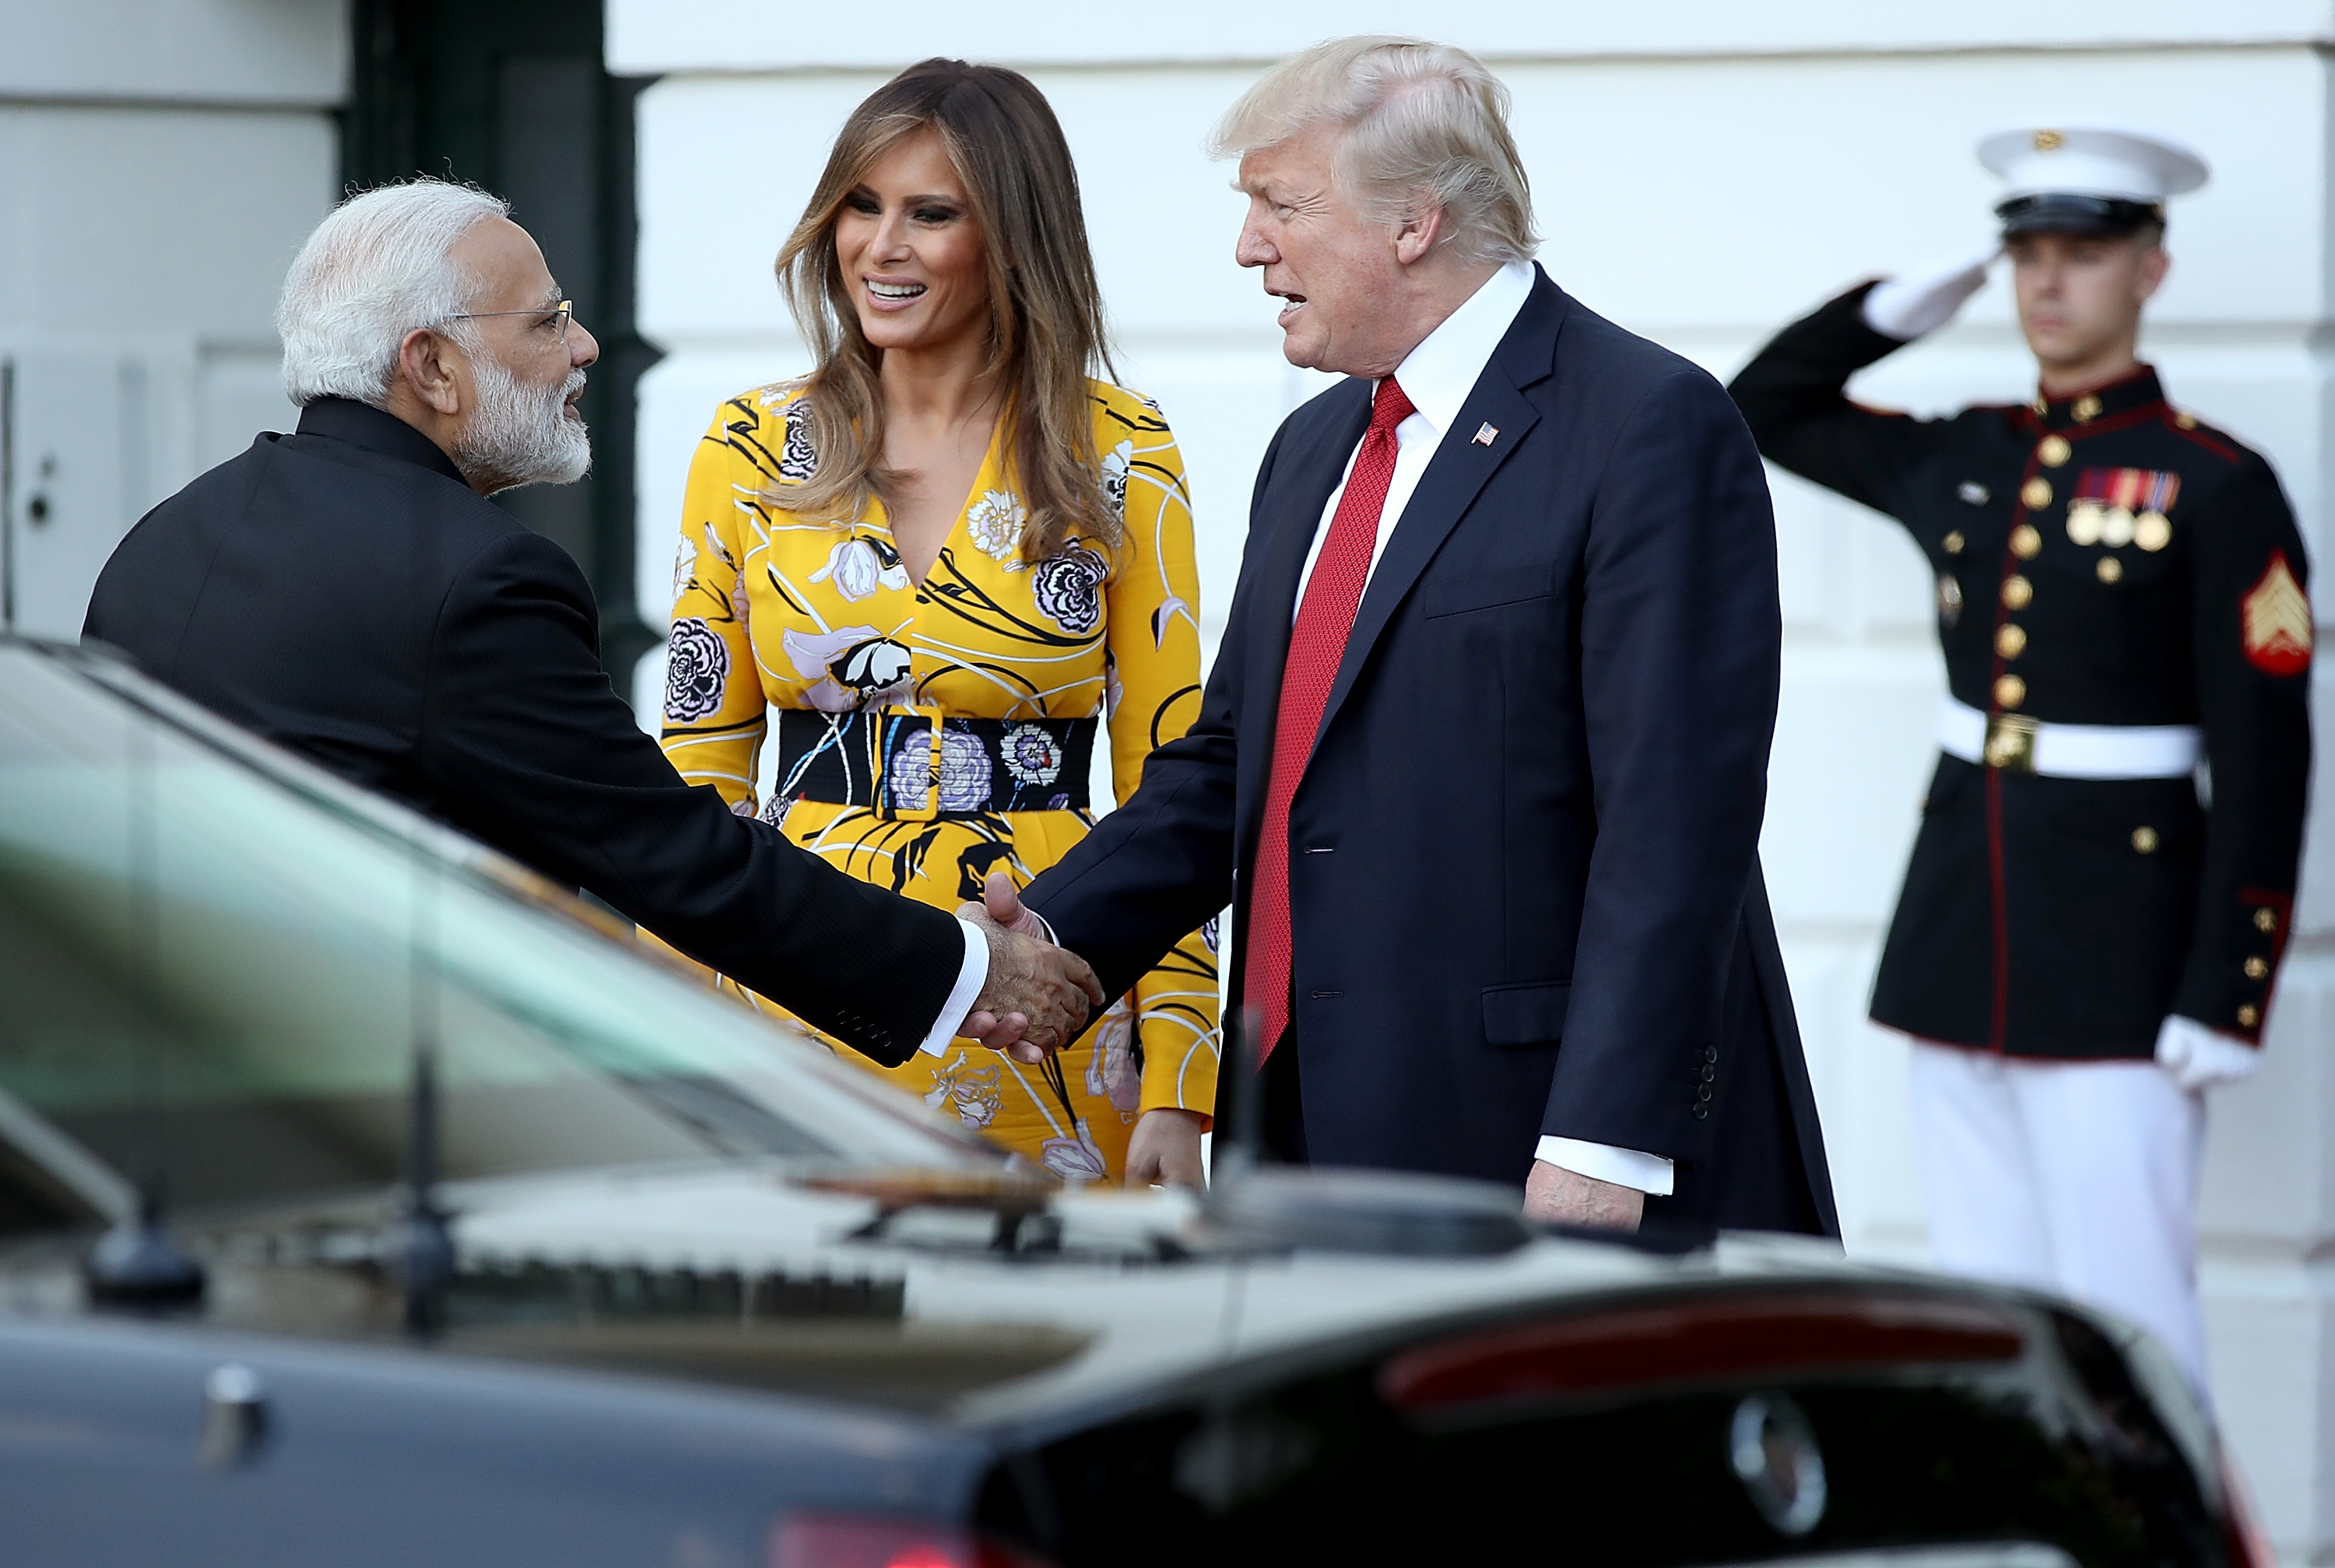 Мелания Тръмп блесна с ярка рокля на официална среща в Белия дом. Първата дама на САЩ избра жълта рокля с флорални мотиви за разговора с индийския премиер Нарендра Моди.